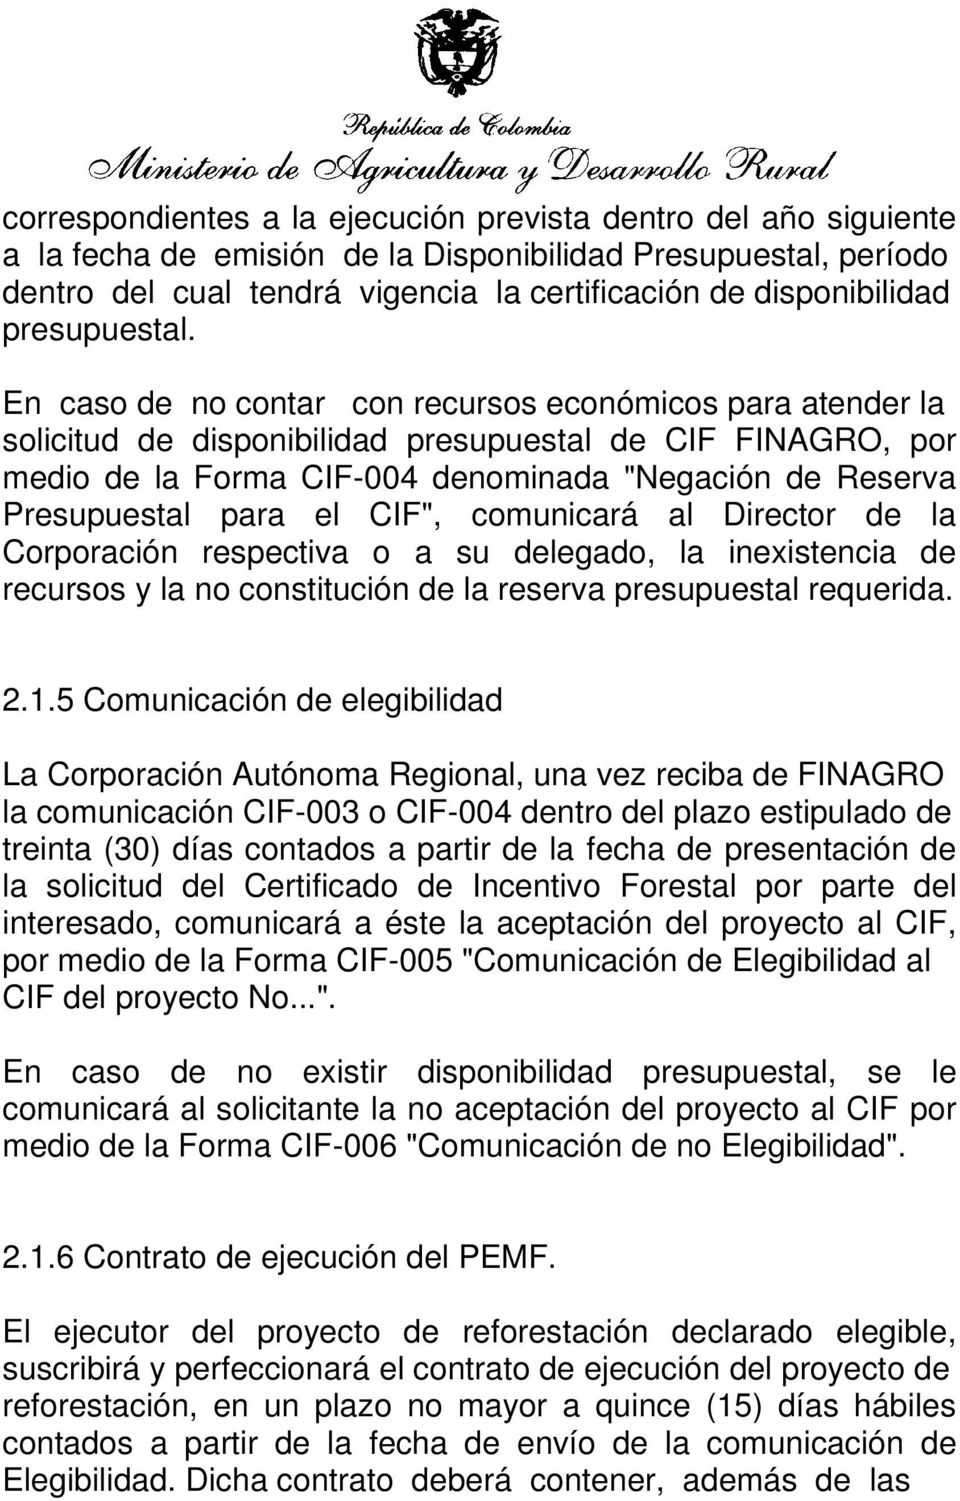 En caso de no contar con recursos económicos para atender la solicitud de disponibilidad presupuestal de CIF FINAGRO, por medio de la Forma CIF-004 denominada "Negación de Reserva Presupuestal para